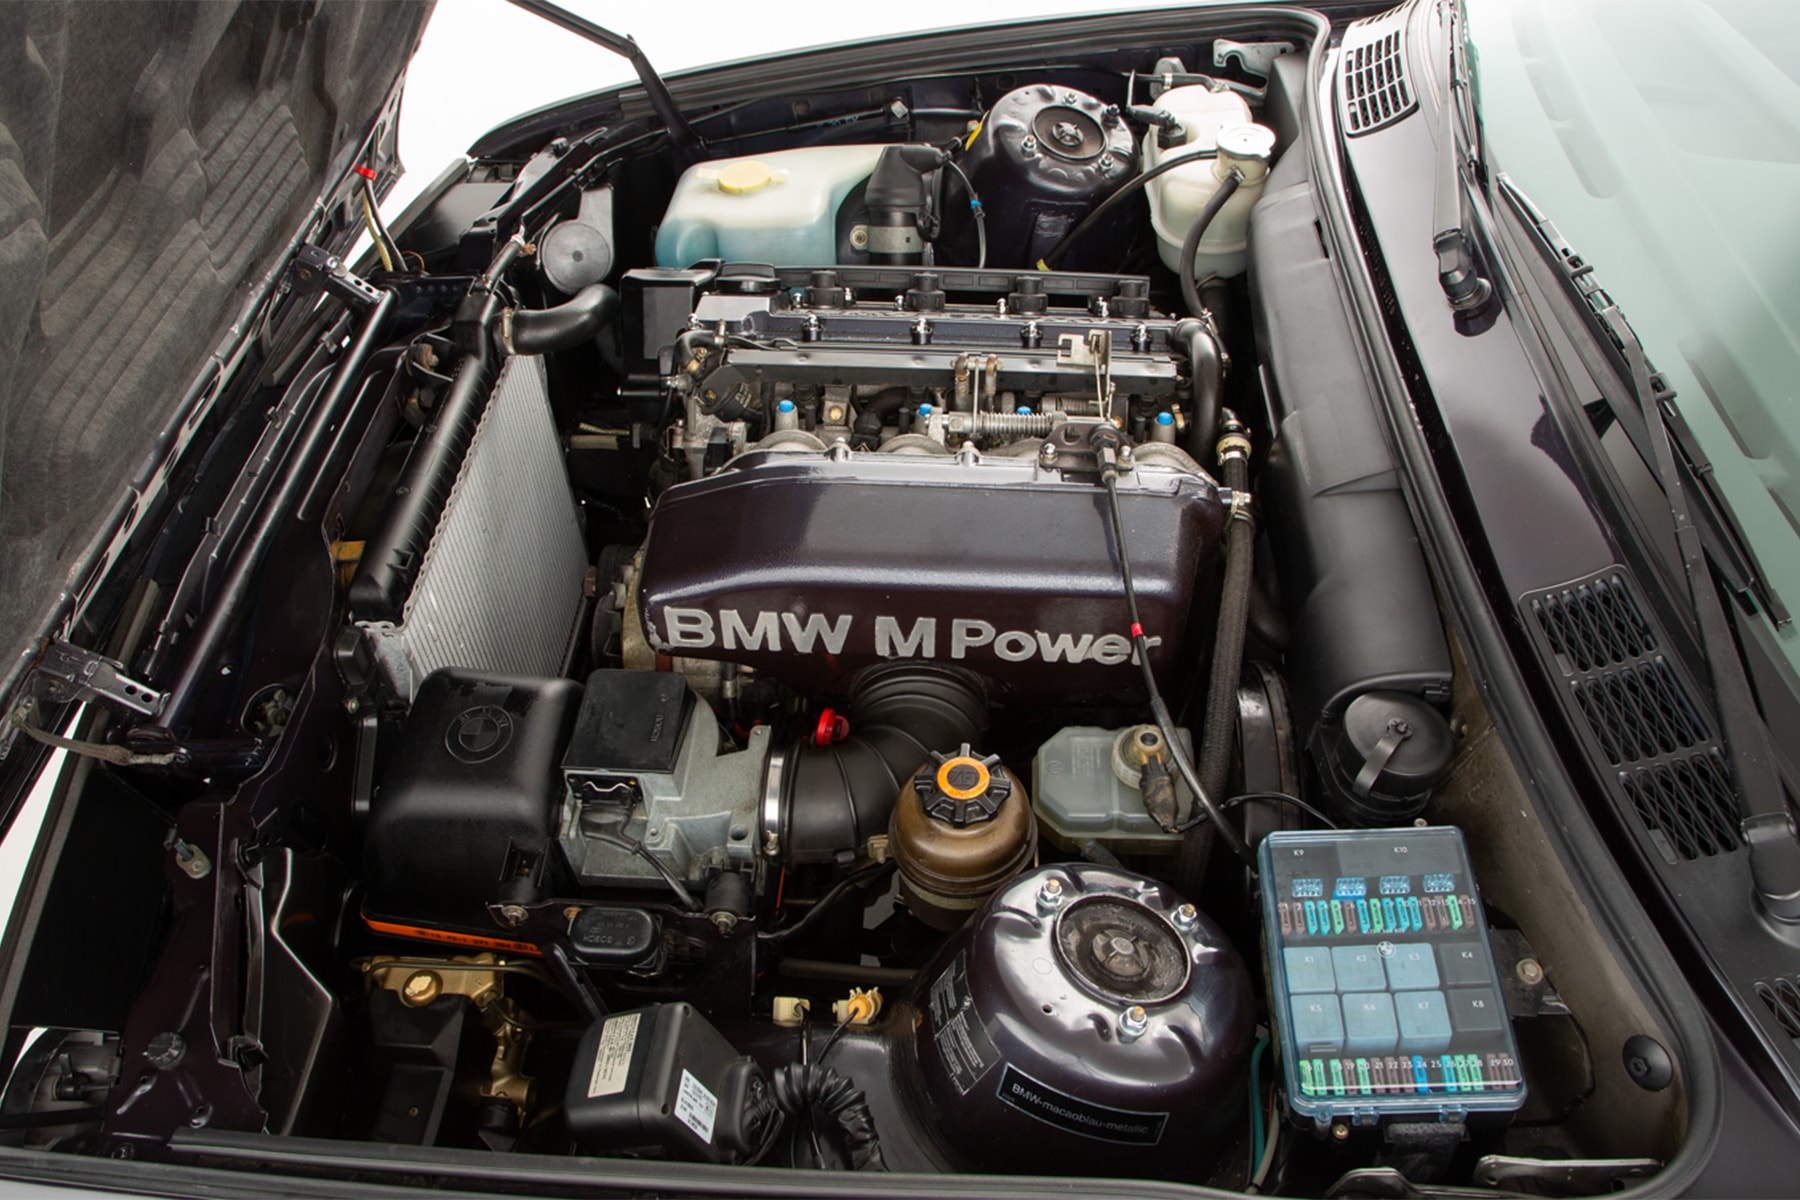 限量 480 輛 BMW E30 M3「Johnny Cecotto Edition」稀有車型展開販售